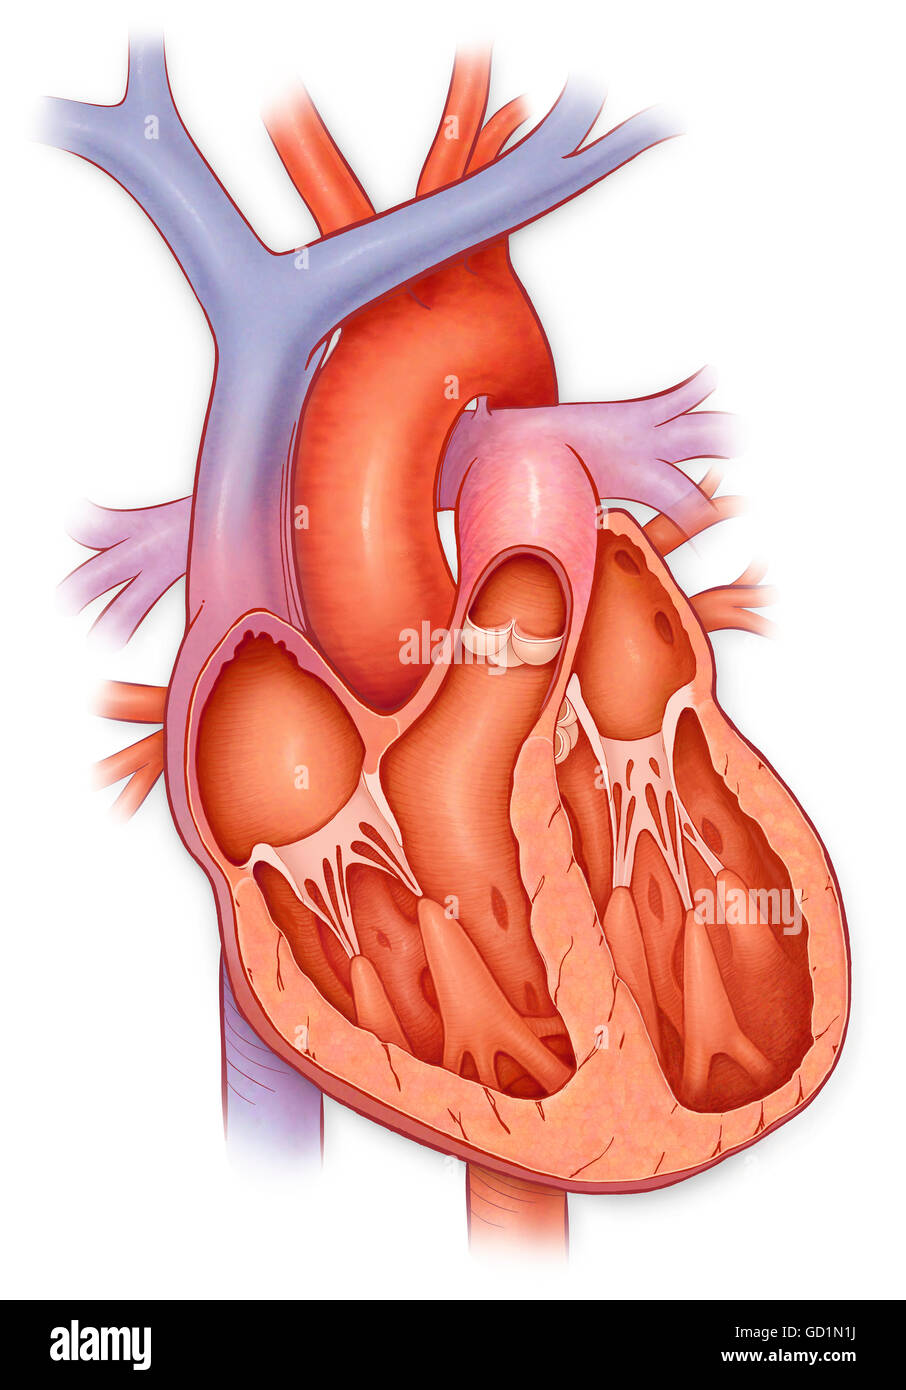 Querschnitt durch ein Herz mit einer erweiterten Ventrikel Stockfoto